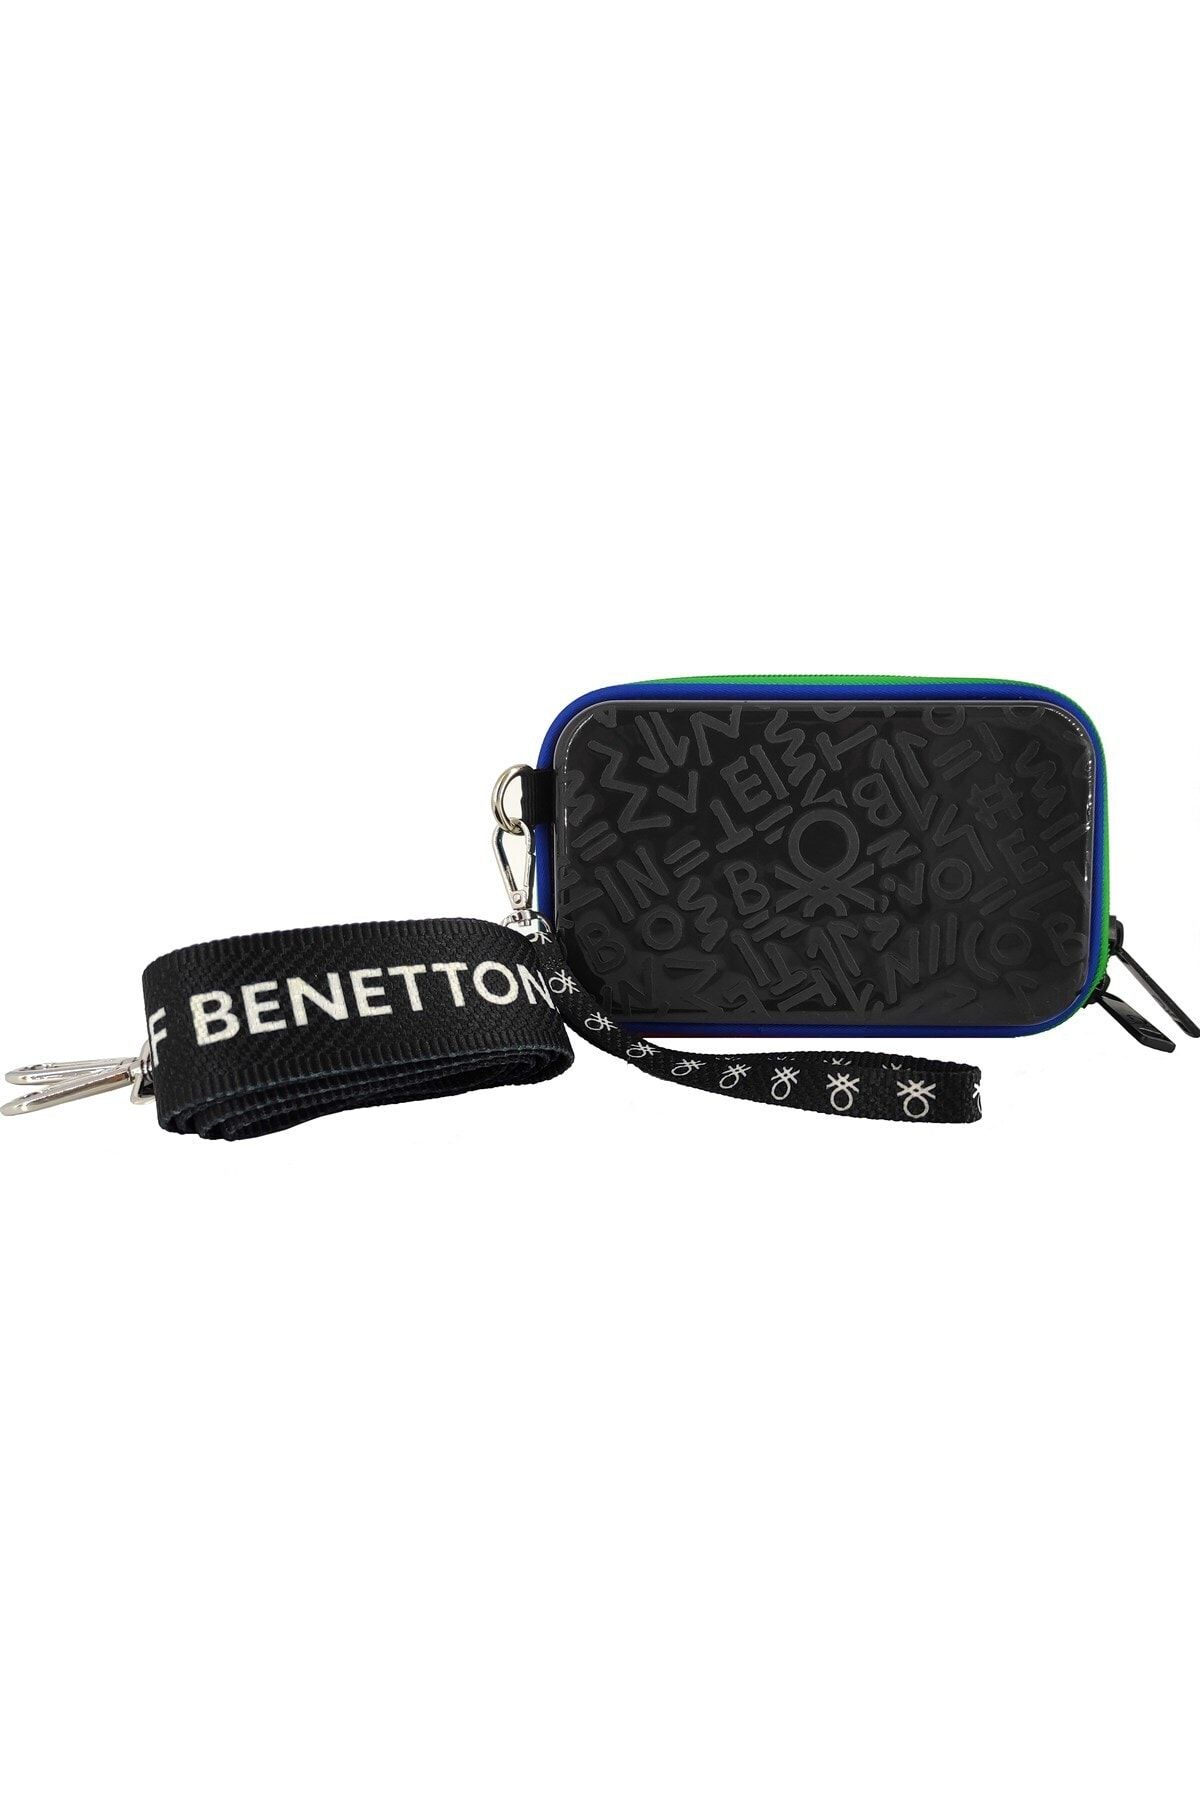 Benetton Bntm100x-00 Black El Çantası